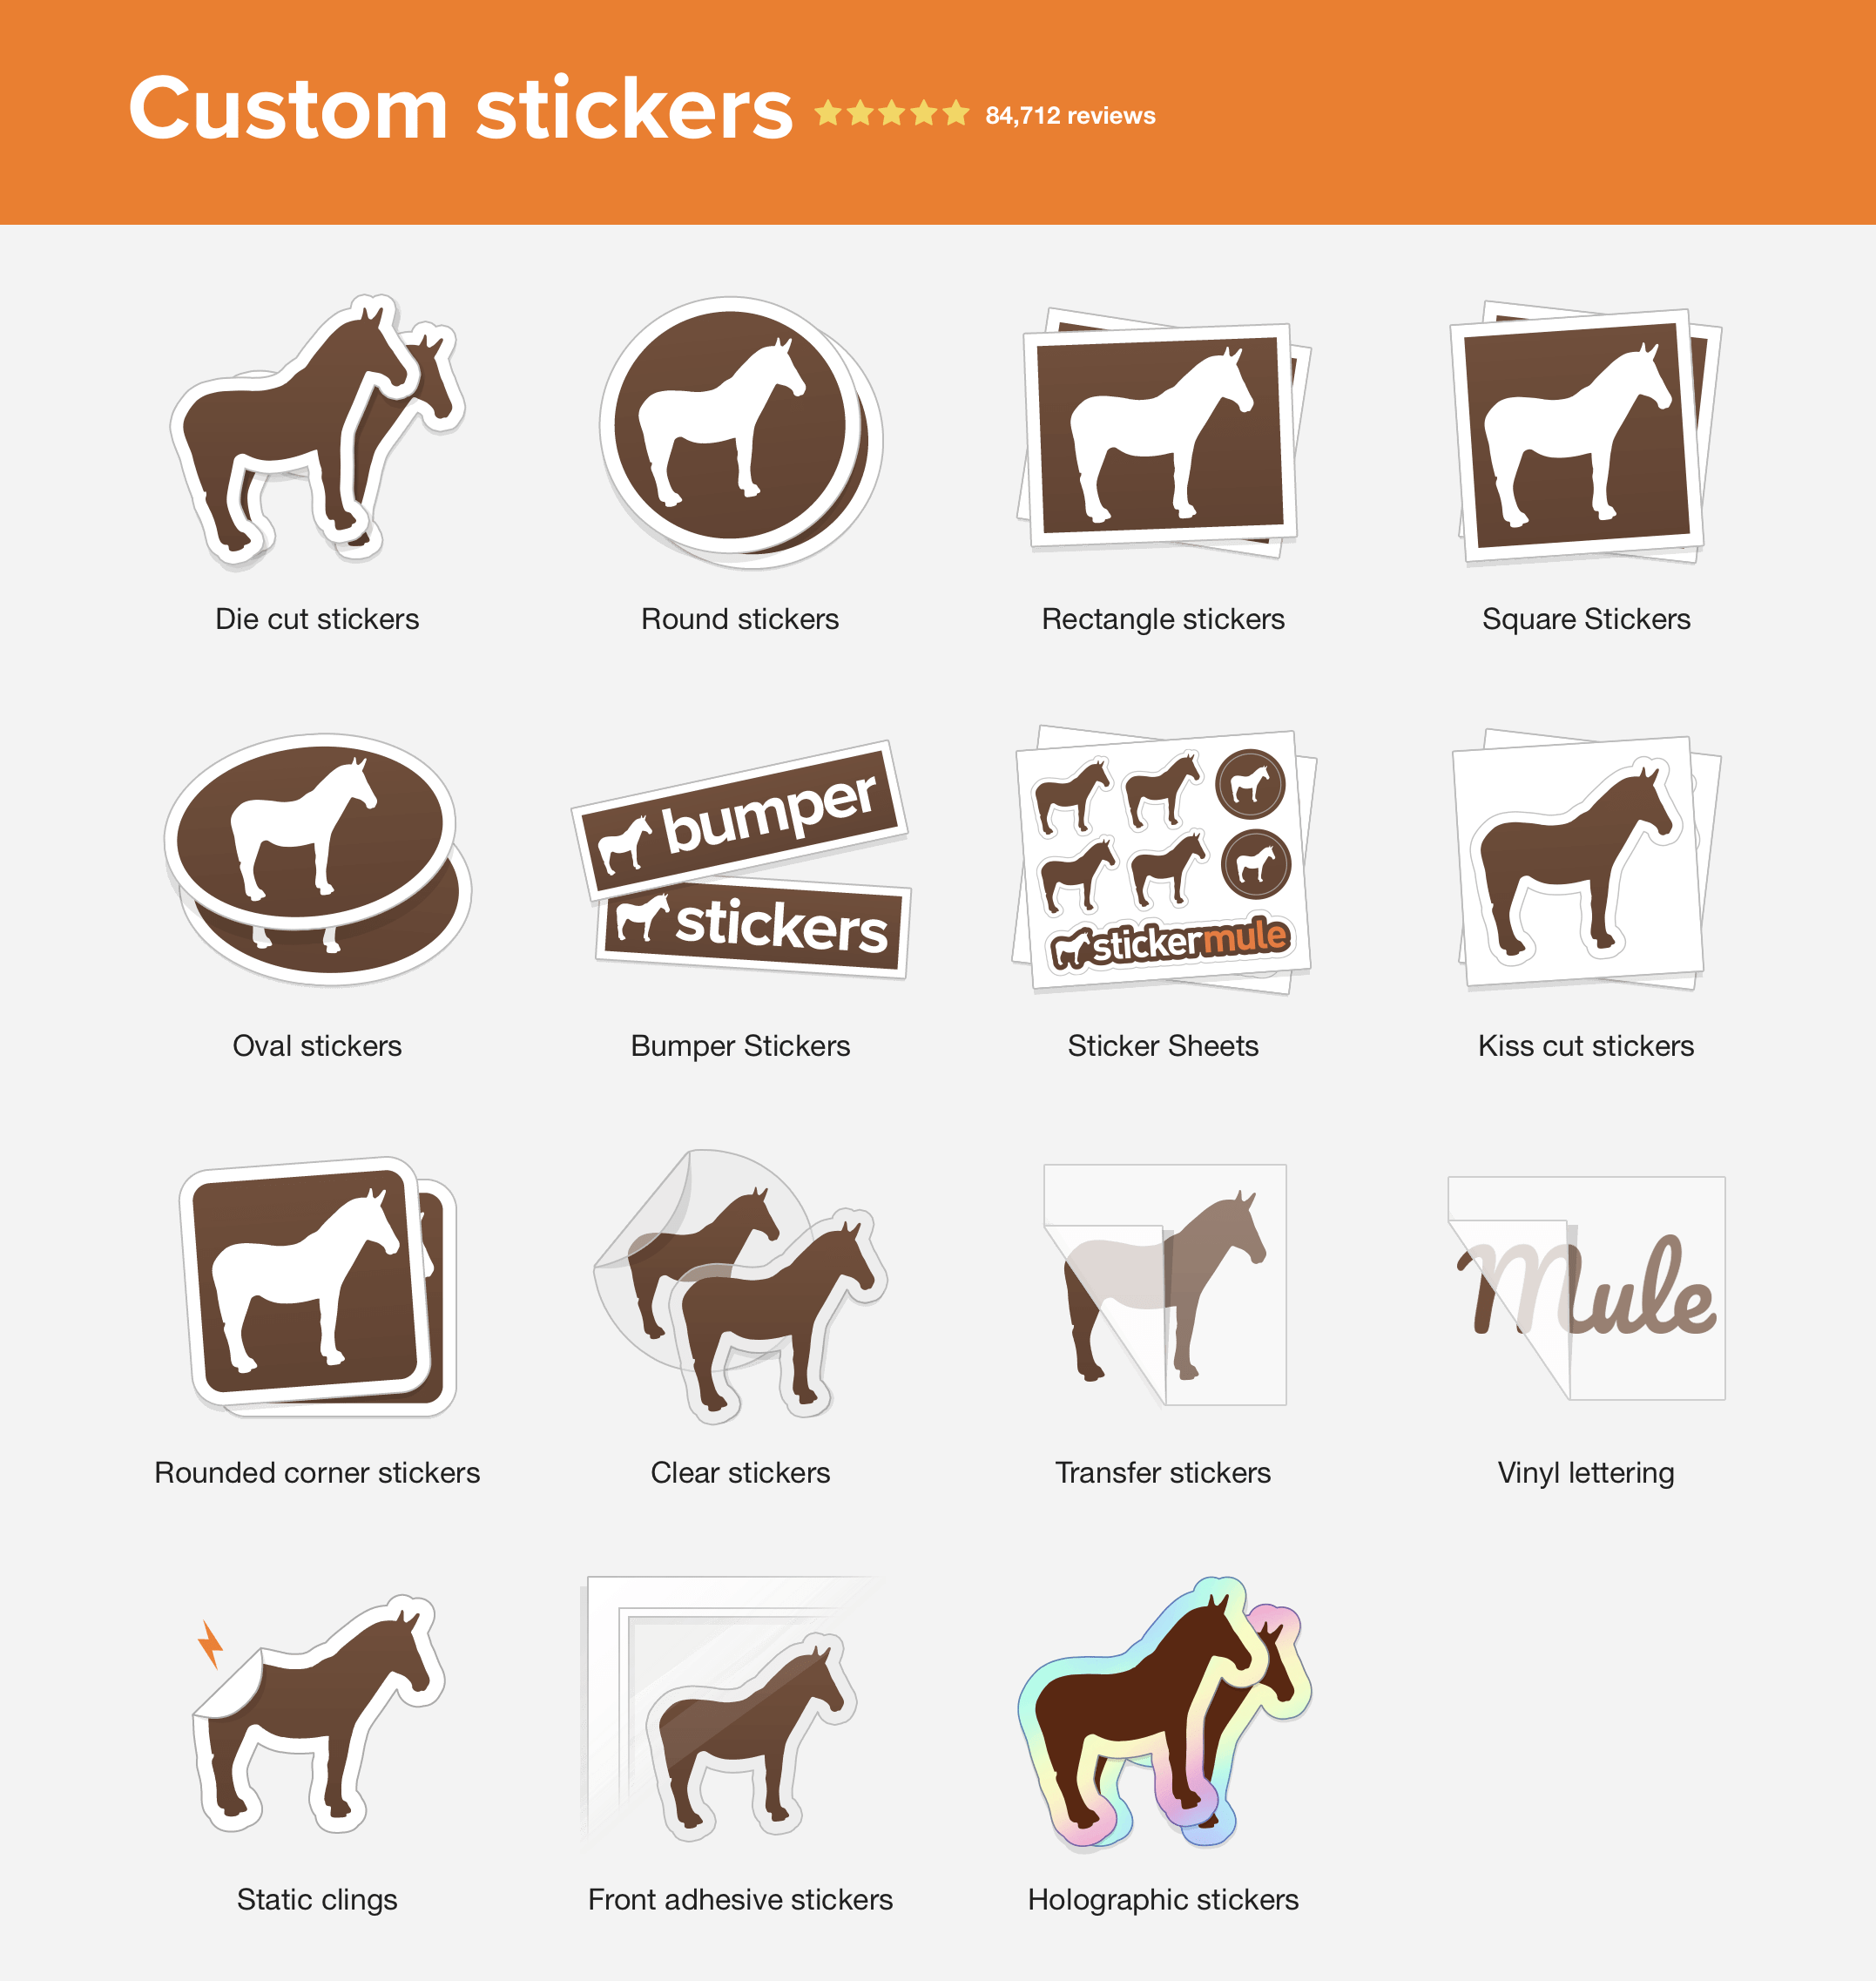 VSCO stickers by sticker mule